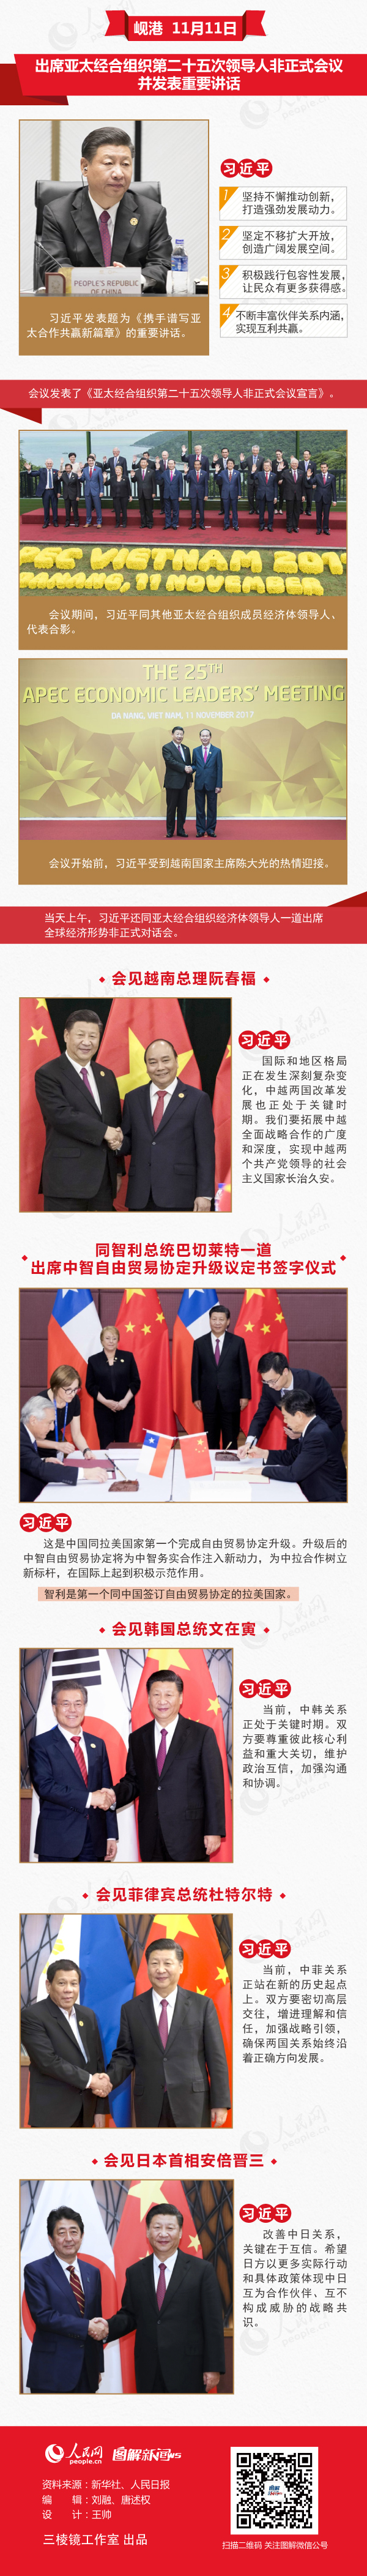 图解:习近平出席APEC会议并访问越南、老挝全记录(上)